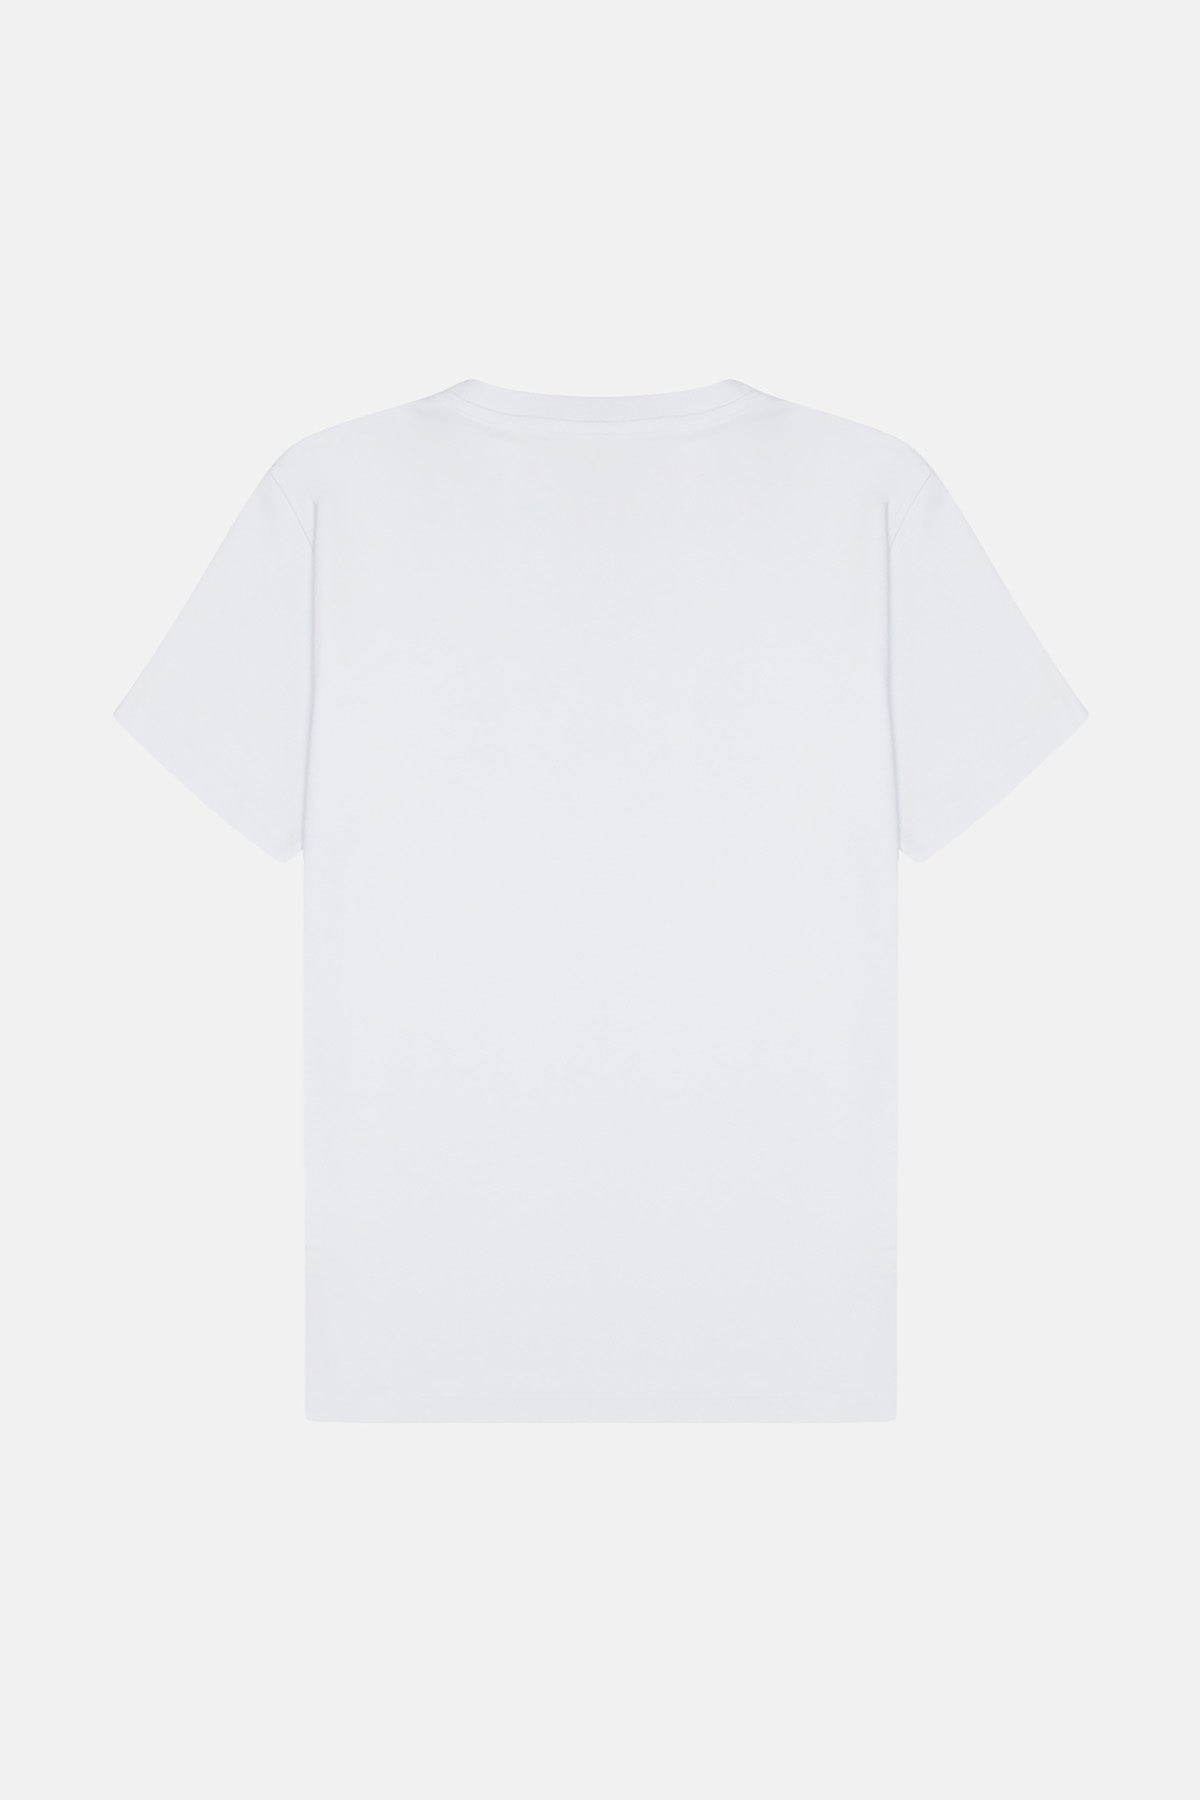 Panda Premium T-Shirt - Beyaz